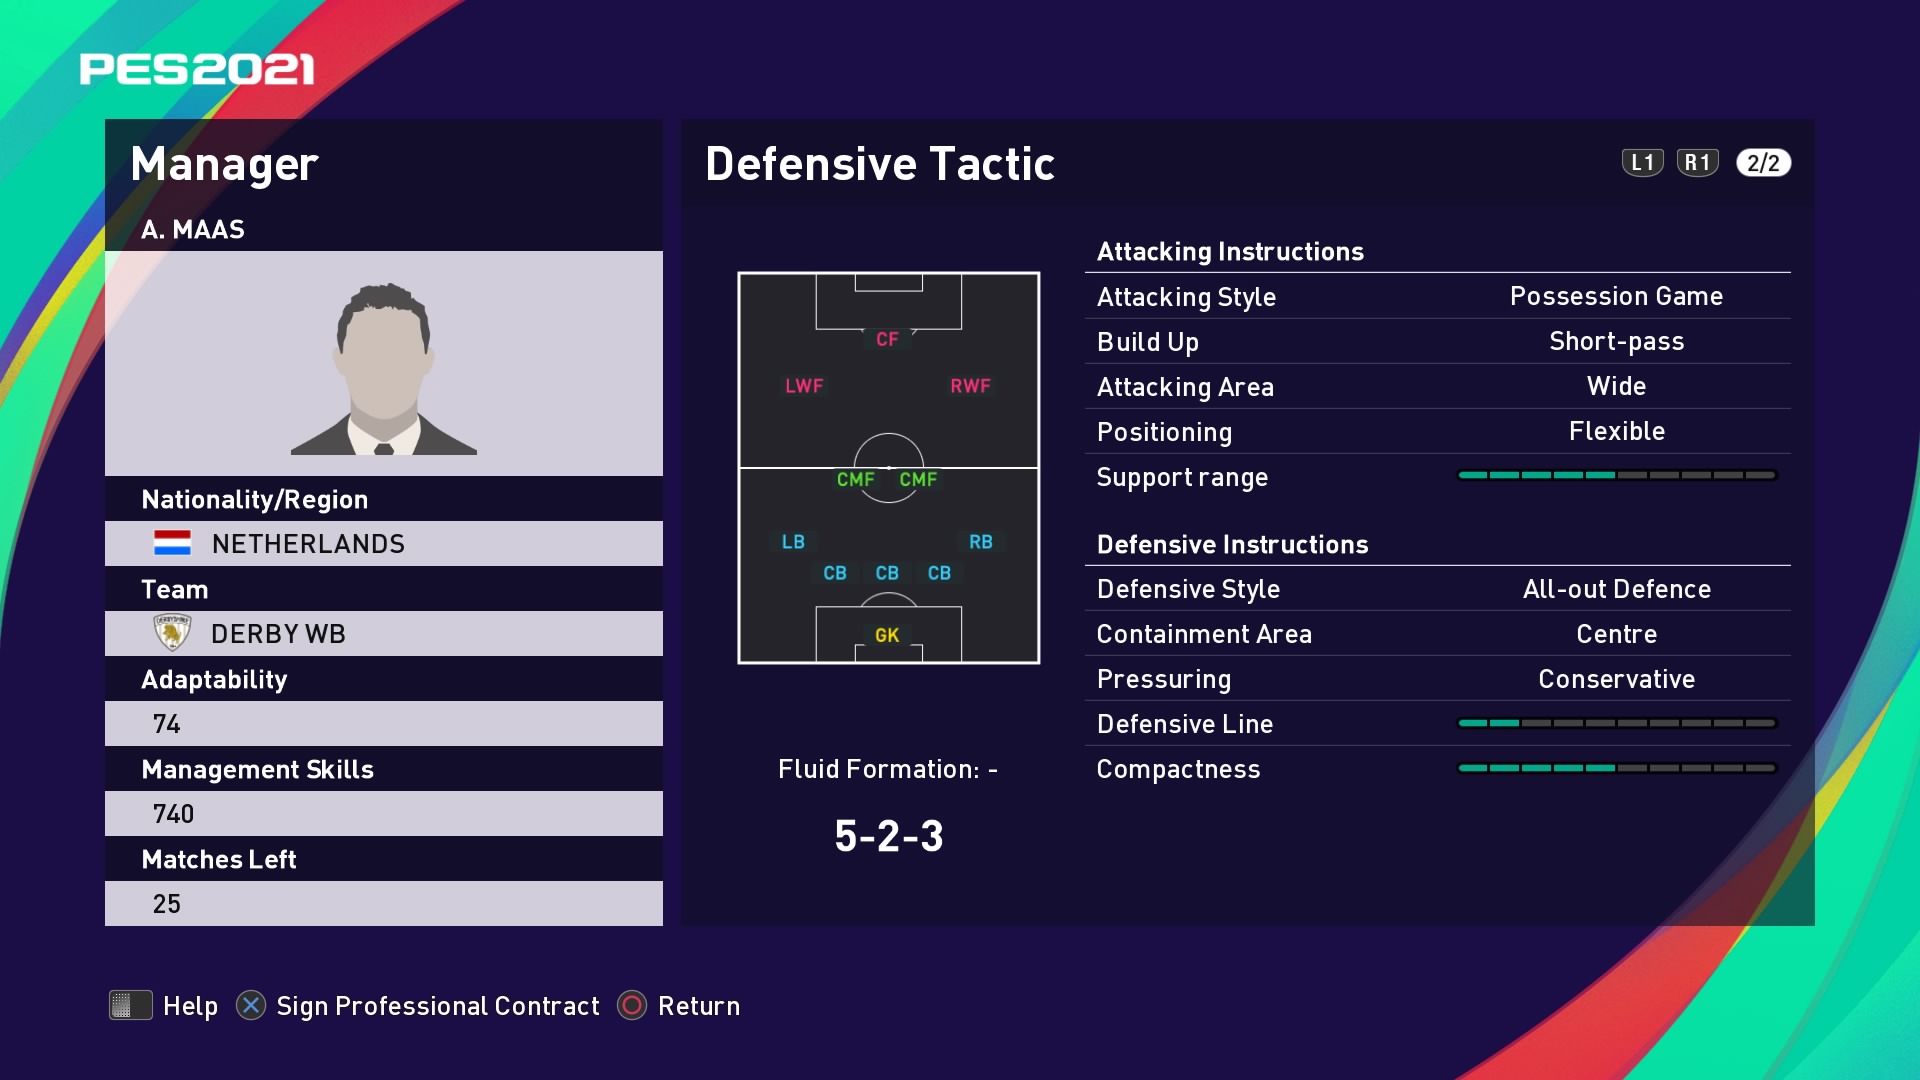 A. Maas (Phillip Cocu) Defensive Tactic in PES 2021 myClub